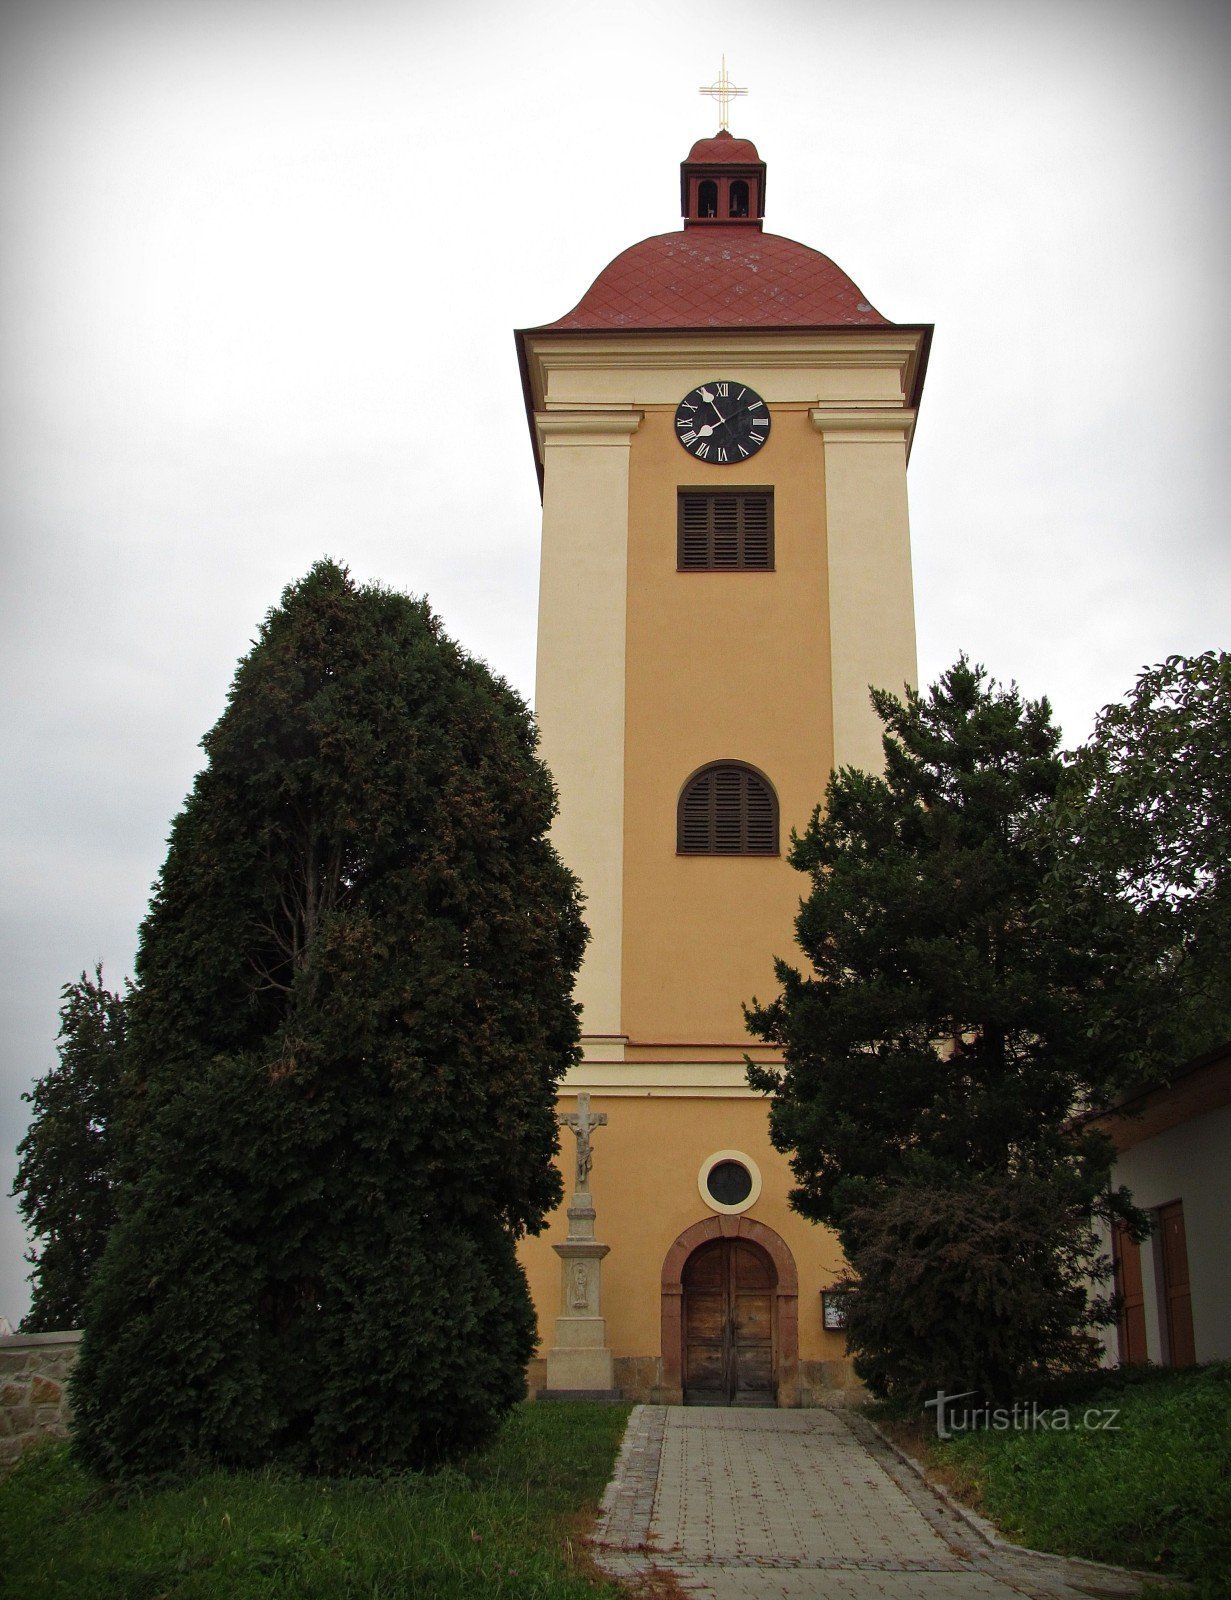 Zlín - Szent Miklós templom Malenovice-ben